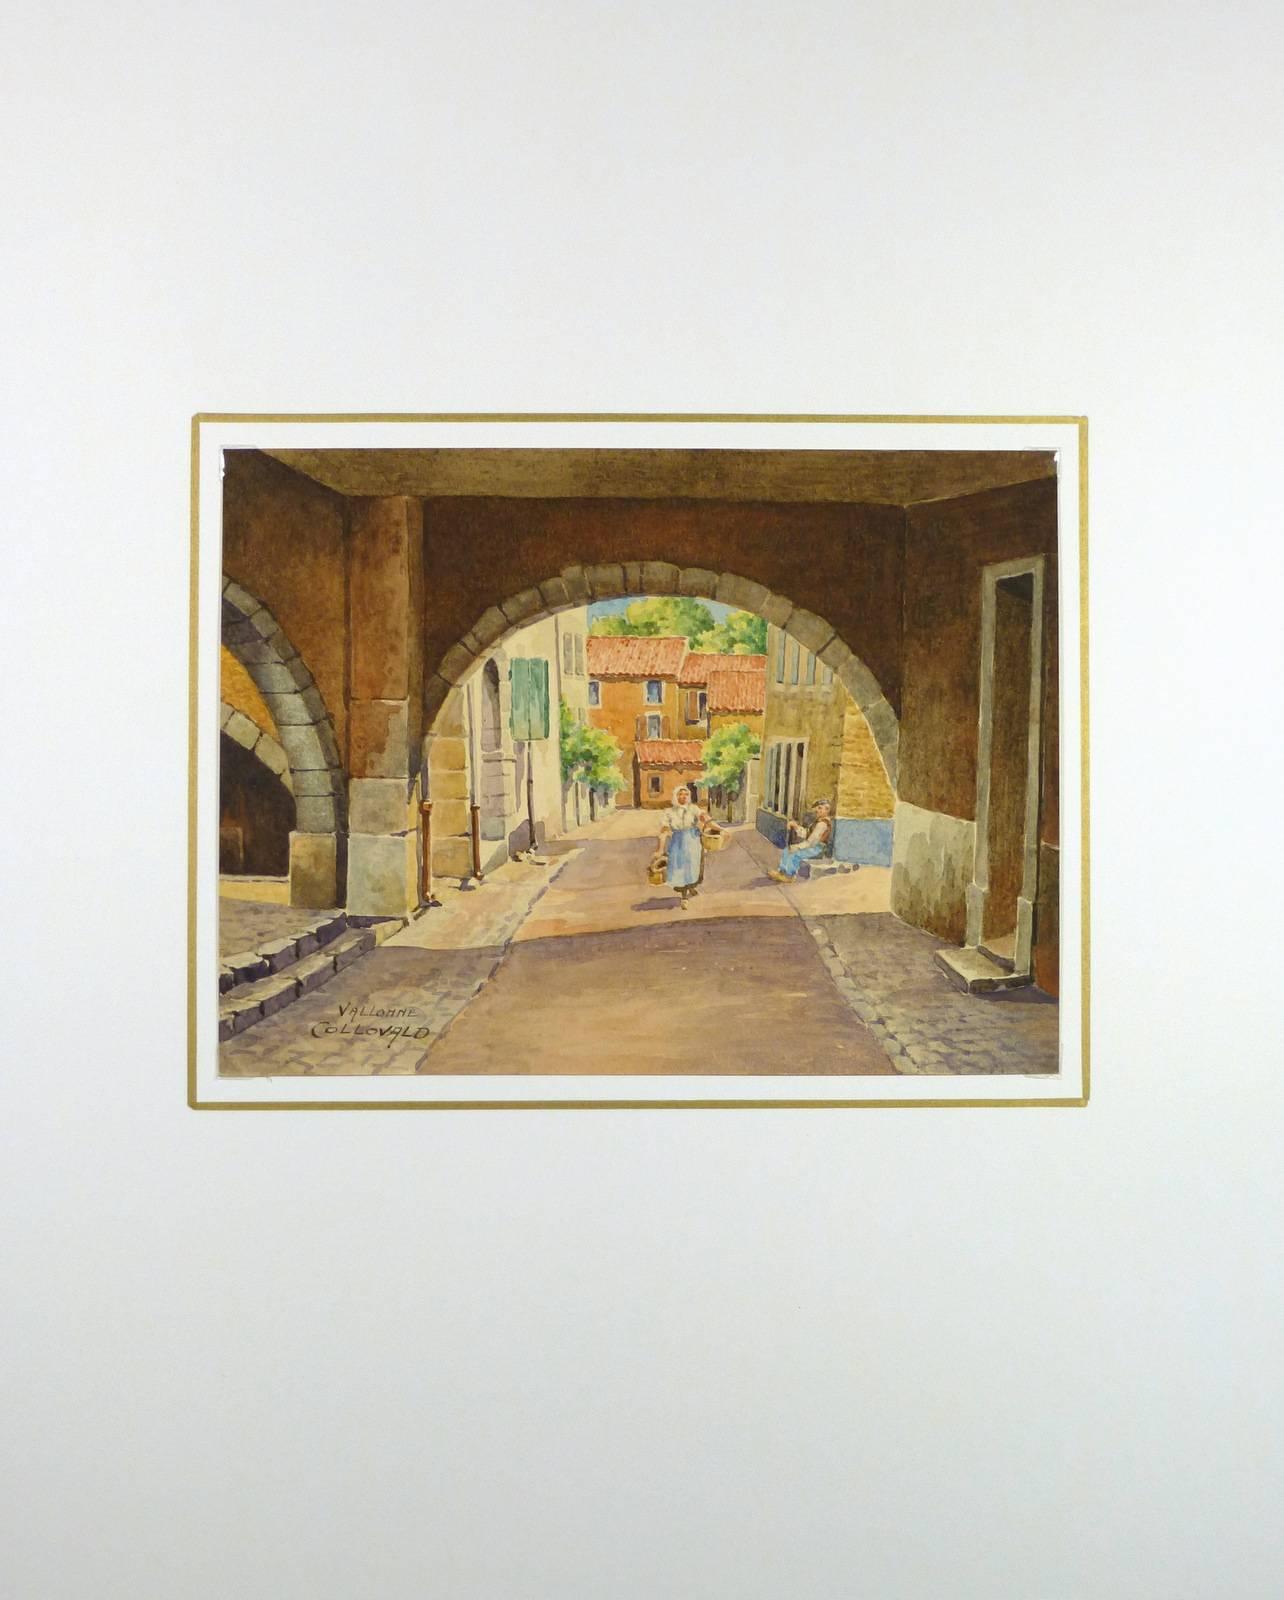 Bezaubernde Aquarellmalerei eines Bogens über einer Stadtstraße von dem französischen Künstler Genin, um 1930. Signiert unten links.  

Originalkunstwerk auf Papier auf einem weißen Passepartout mit Goldrand. Die Matte passt in einen Rahmen in